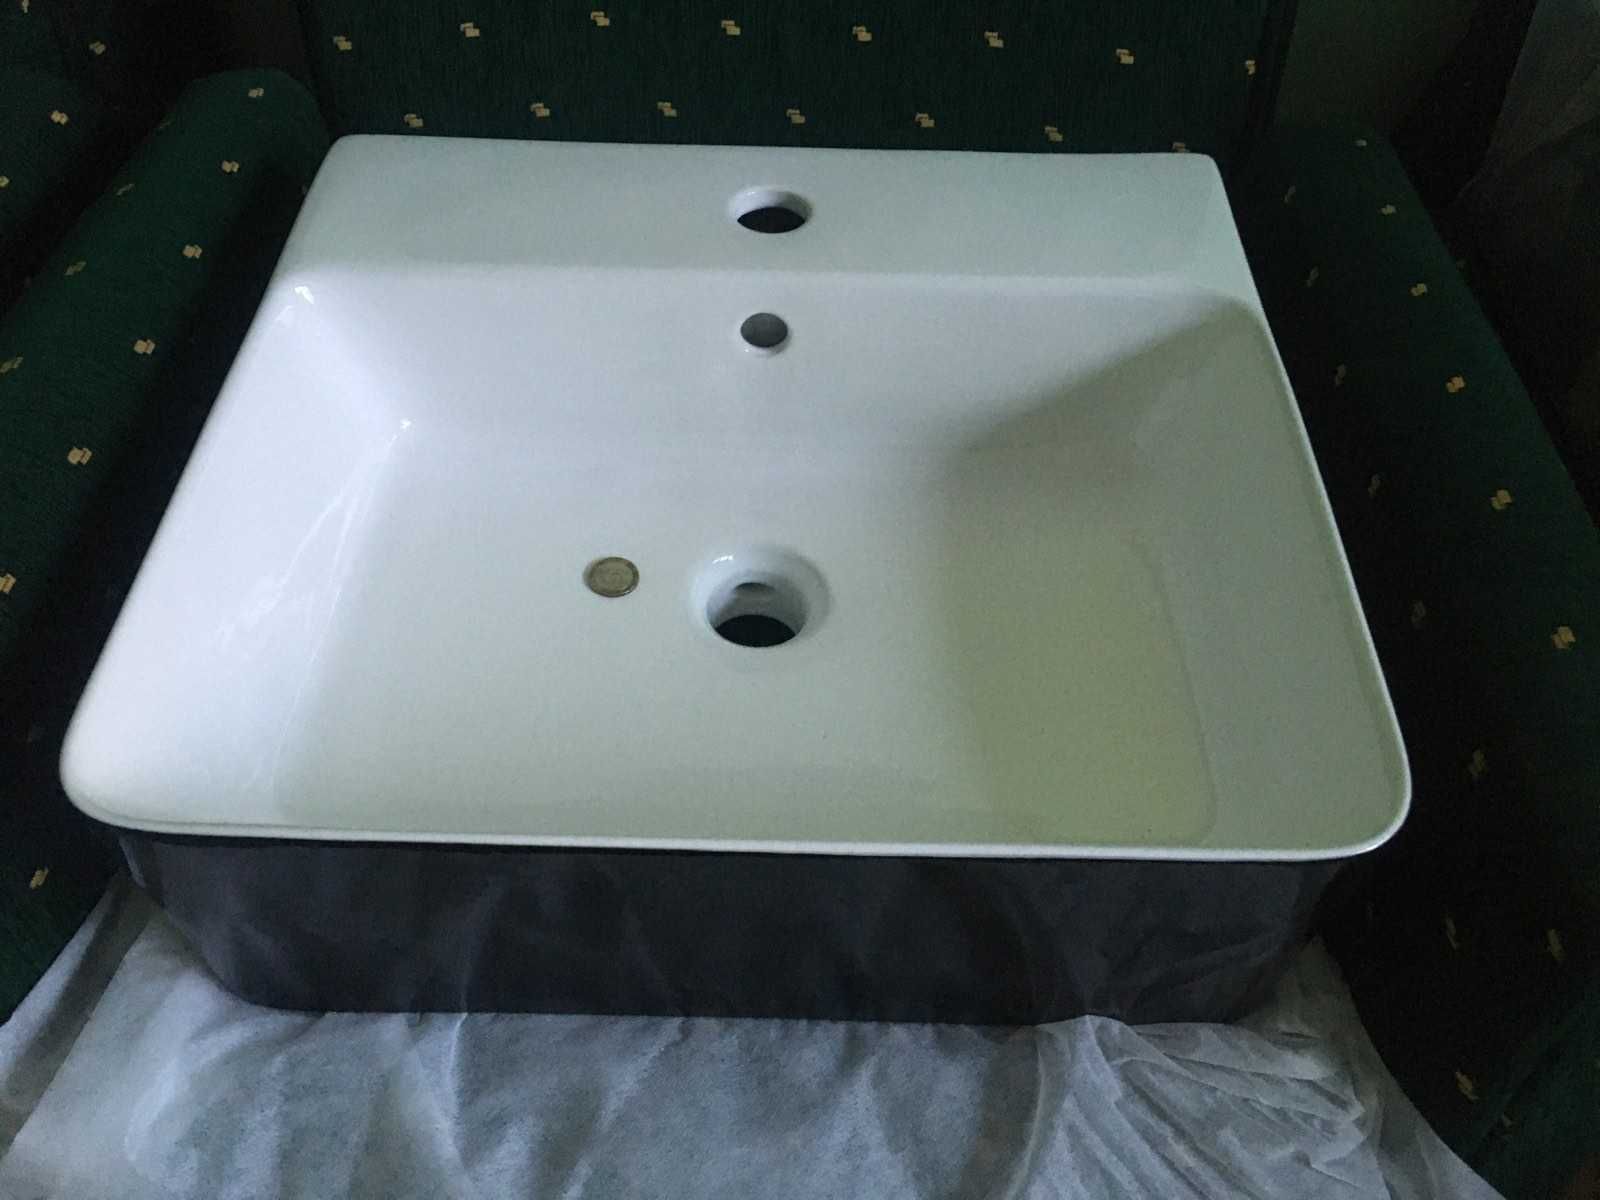 Черно-бяла мивка за баня